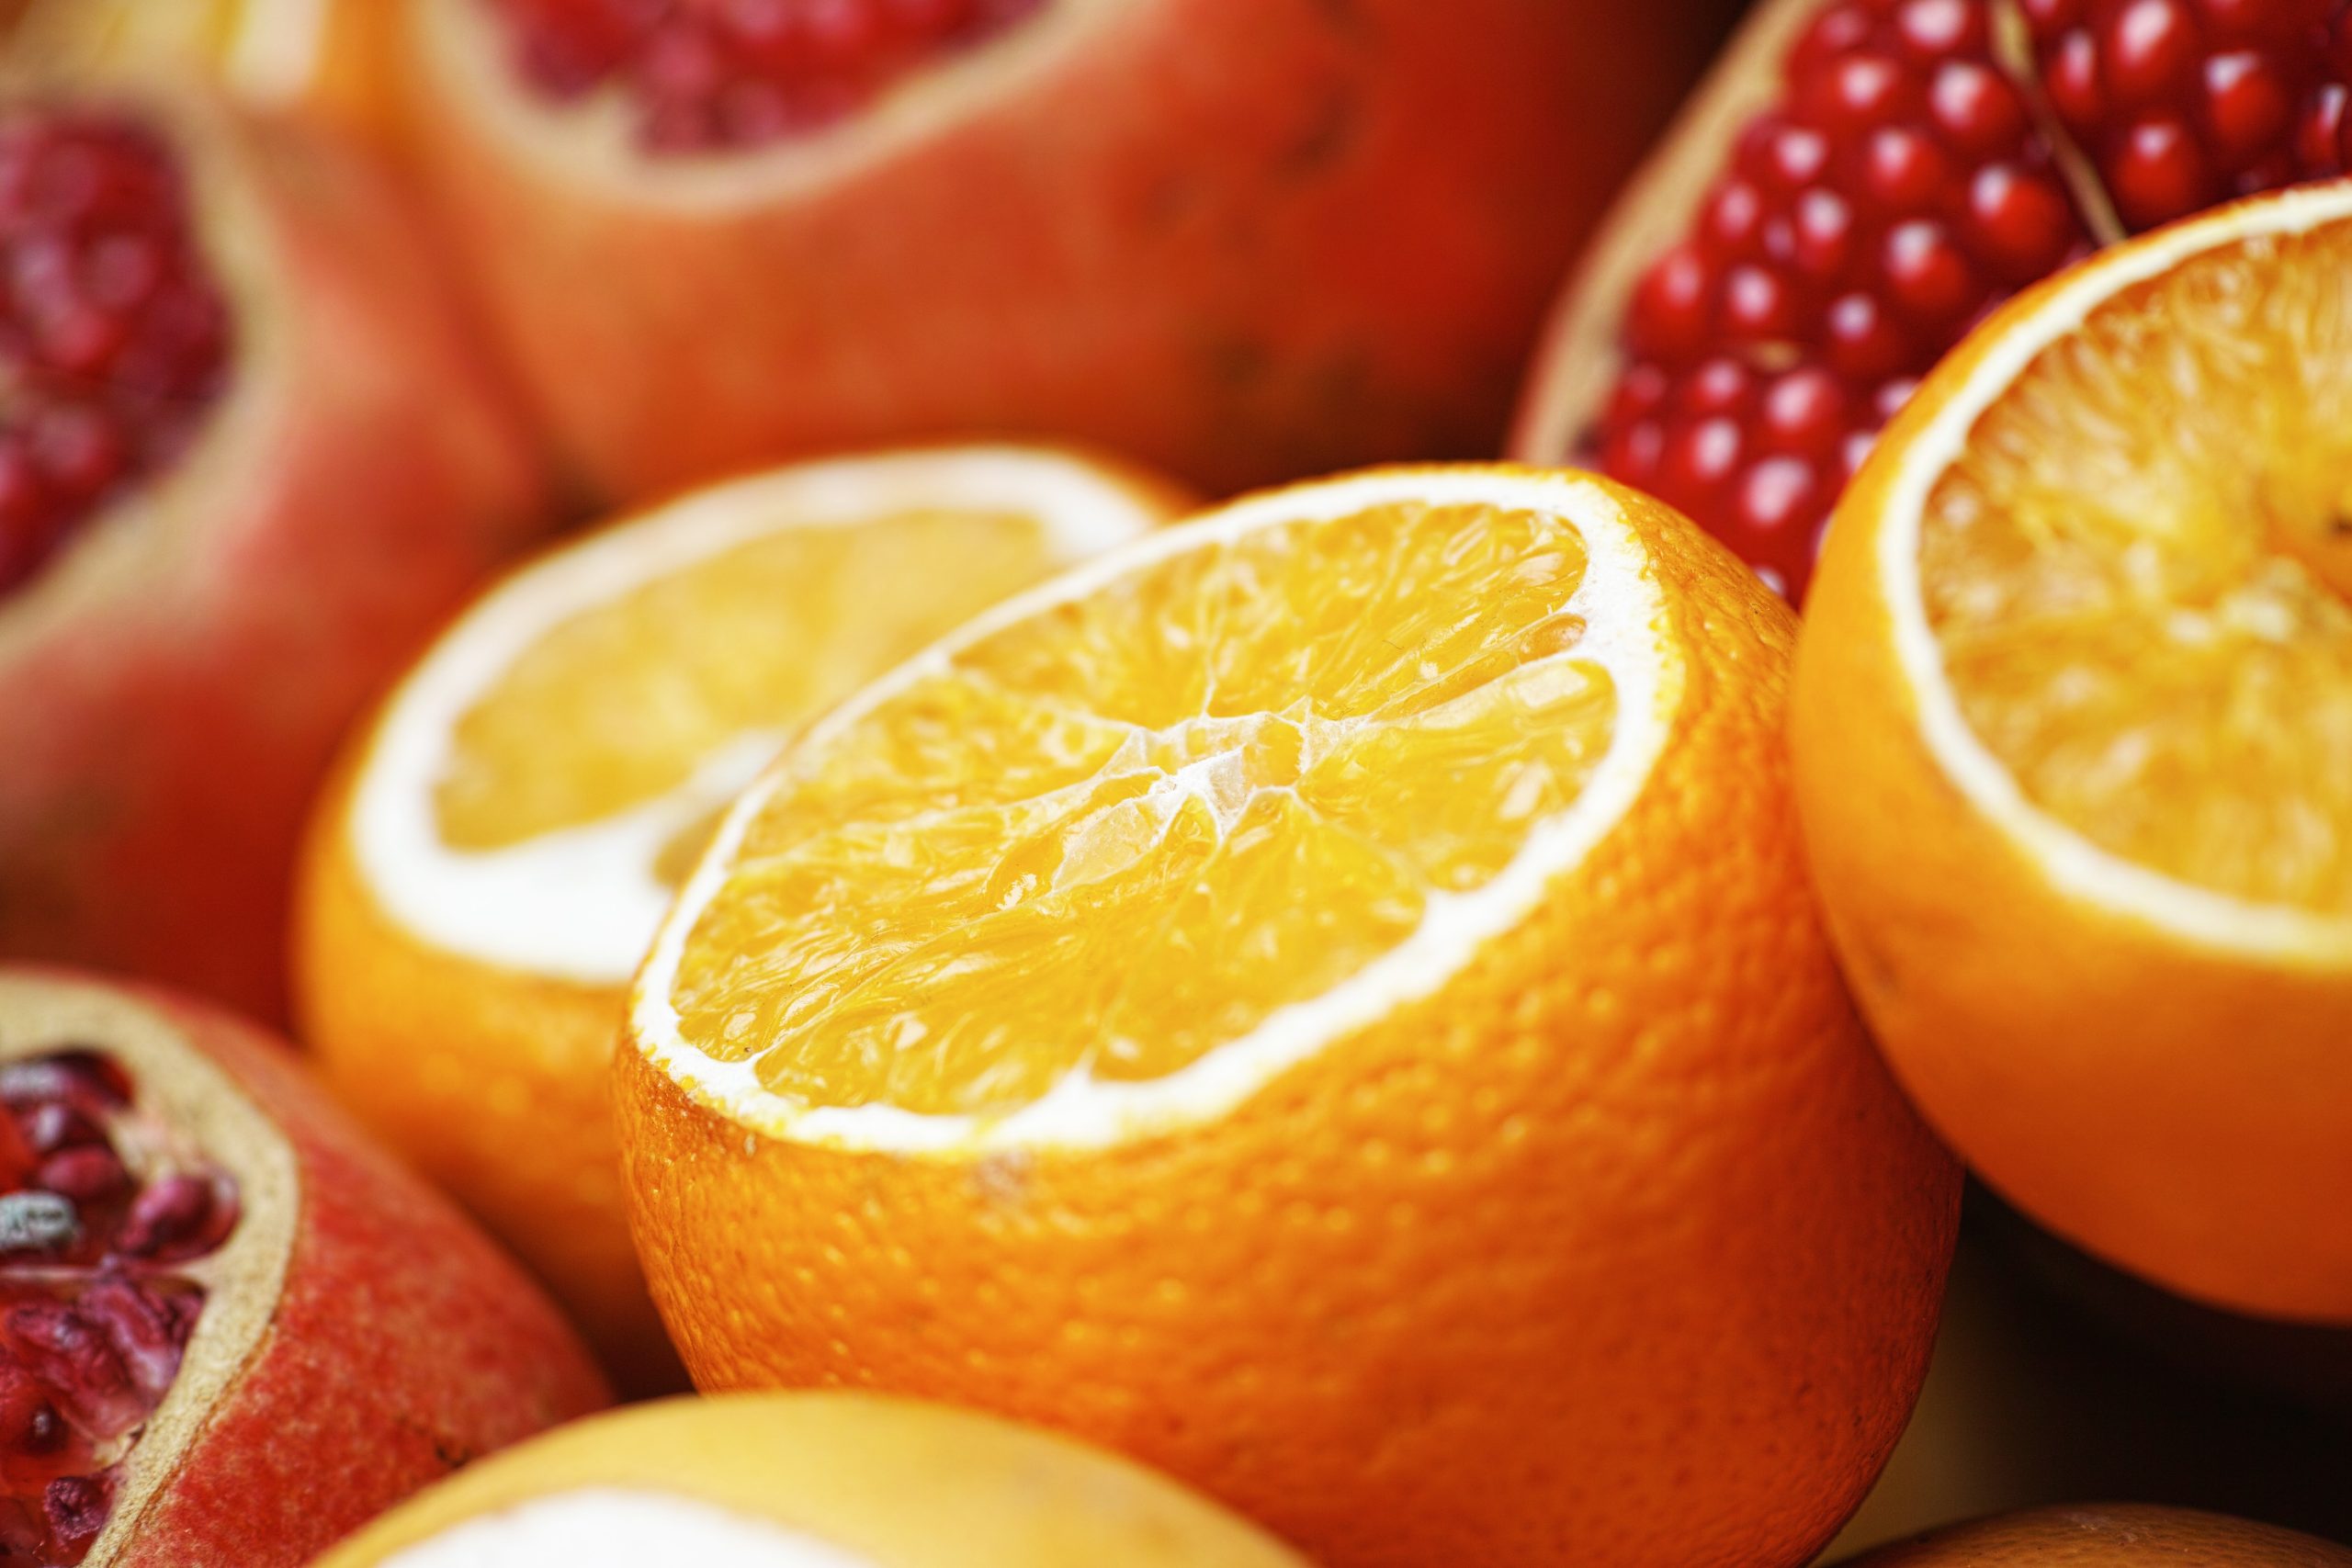 Αυτές οι εννιά τροφές έχουν περισσότερη βιταμίνη C από ένα πορτοκάλι